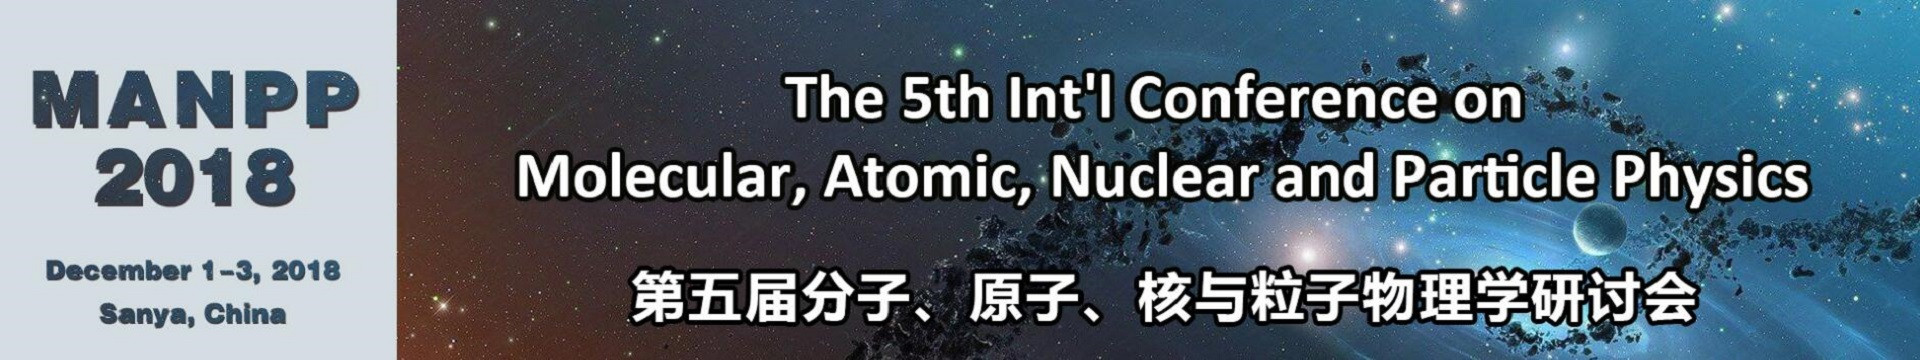 第五届分子、原子、核及粒子物理学术研讨会(MANPP 2018)